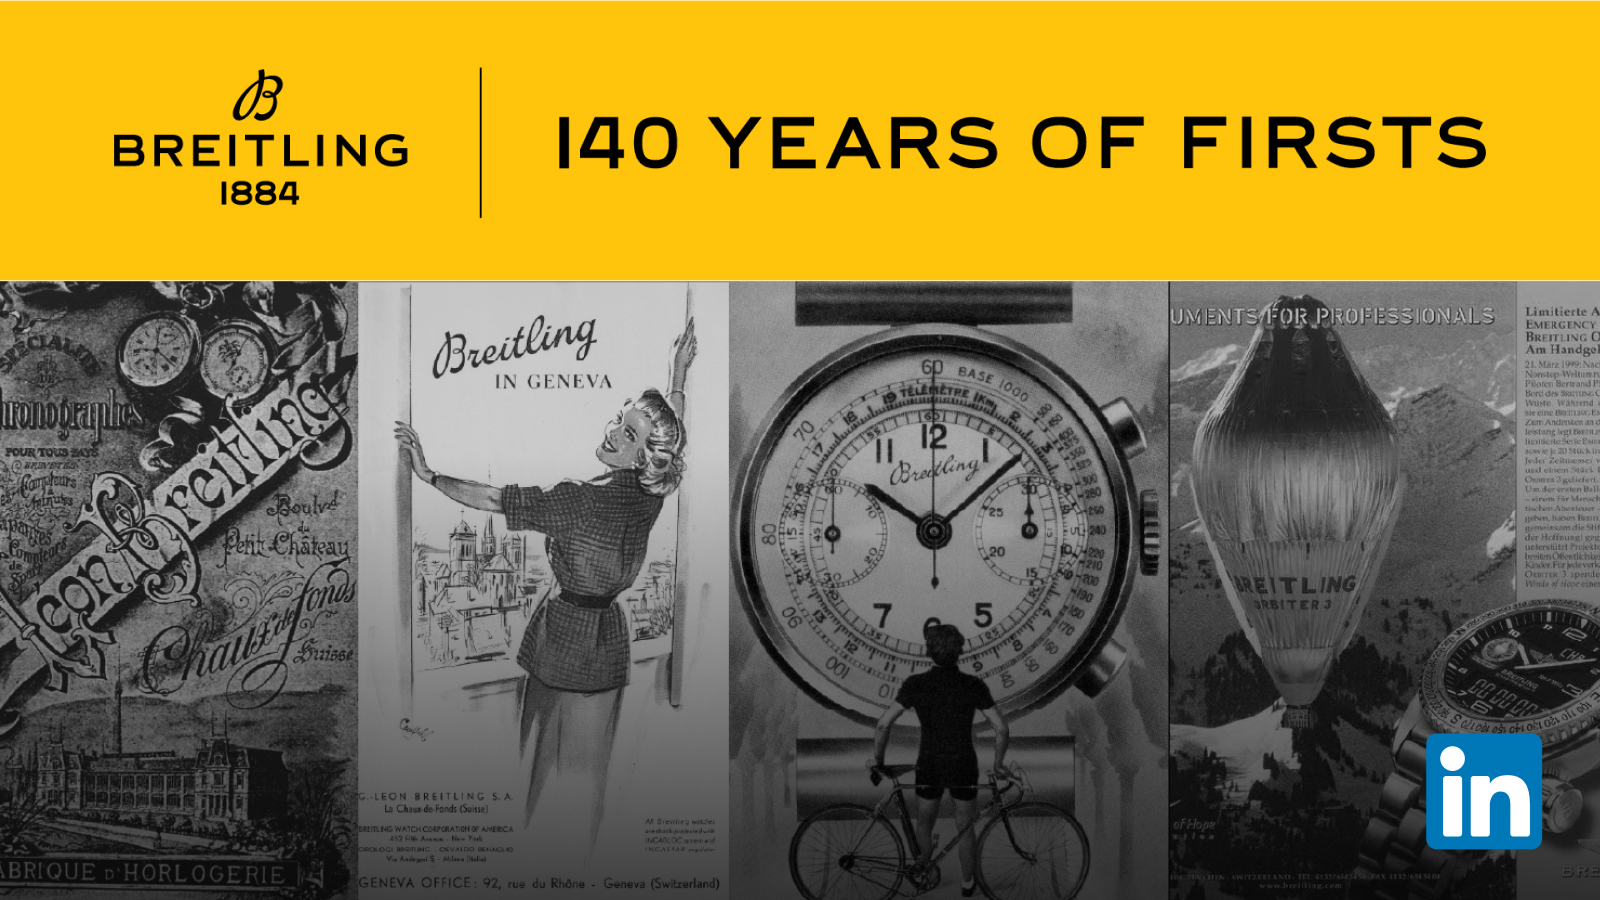 Suivez le voyage de Breitling sur LinkedIn et abonnez-vous à notre newsletter « Depuis 1884 » pour tout savoir sur notre héritage.